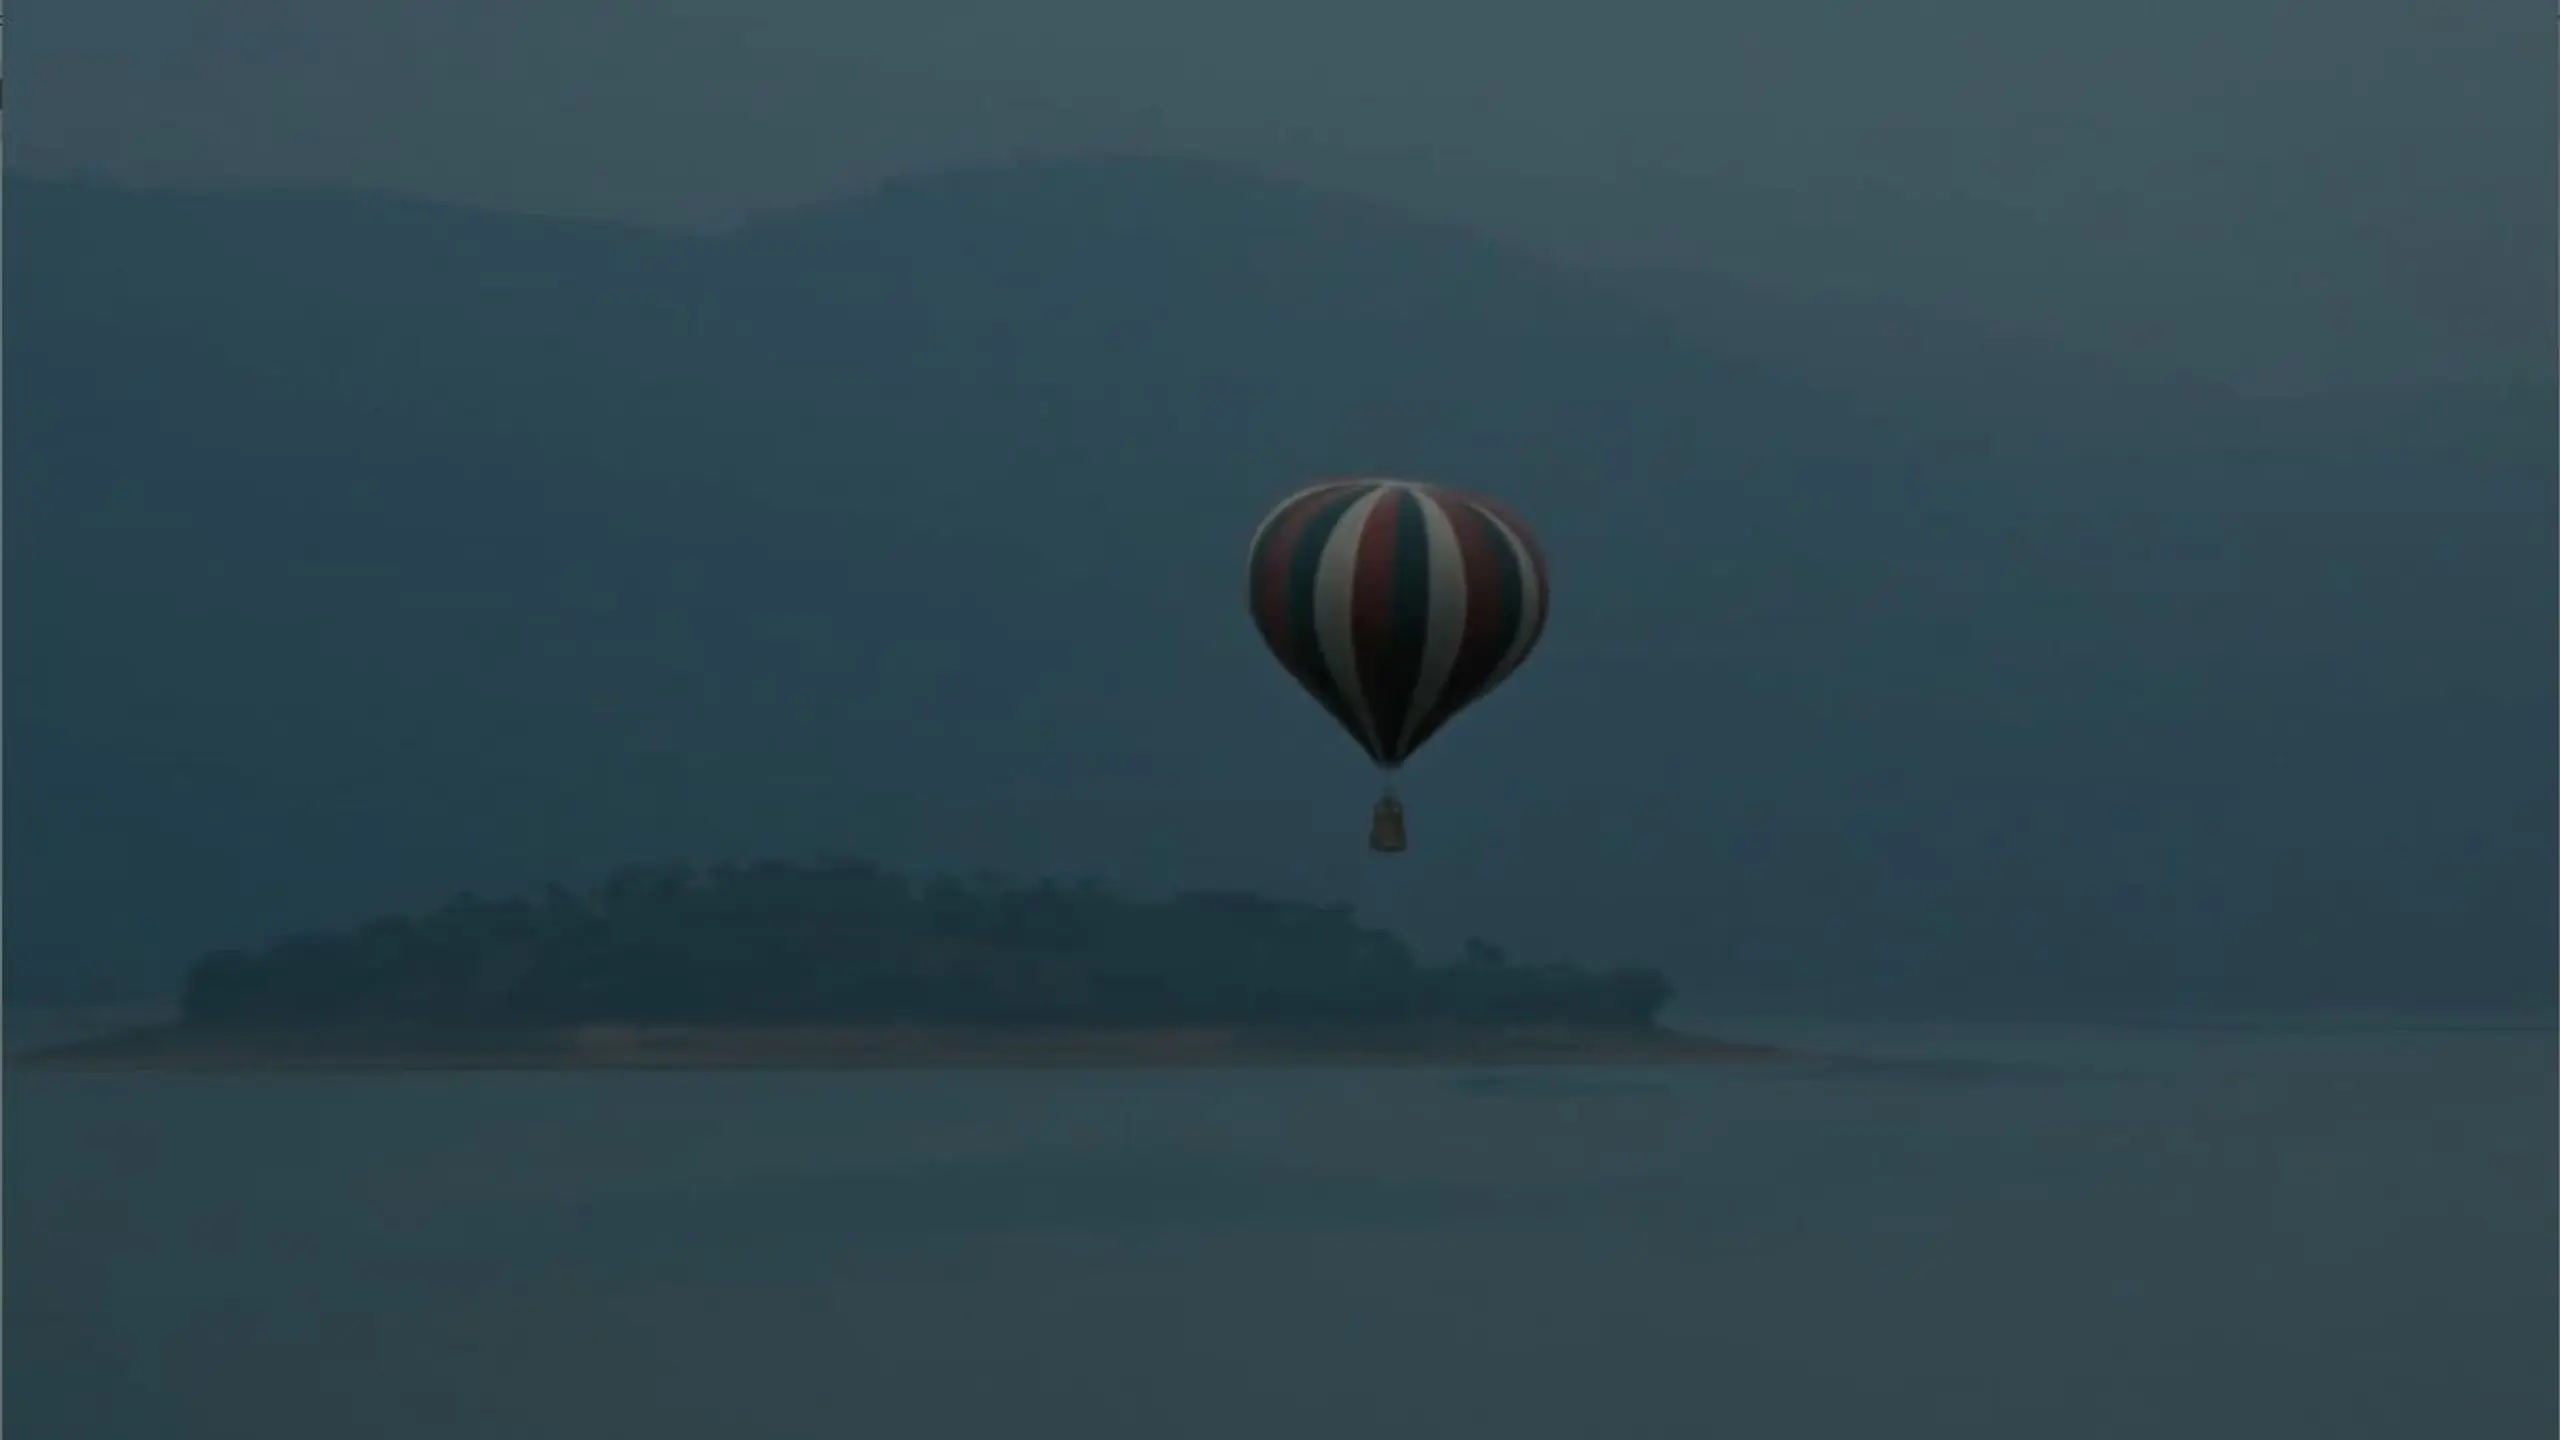 Jules Verne - Die Phantastische Reise im Ballon